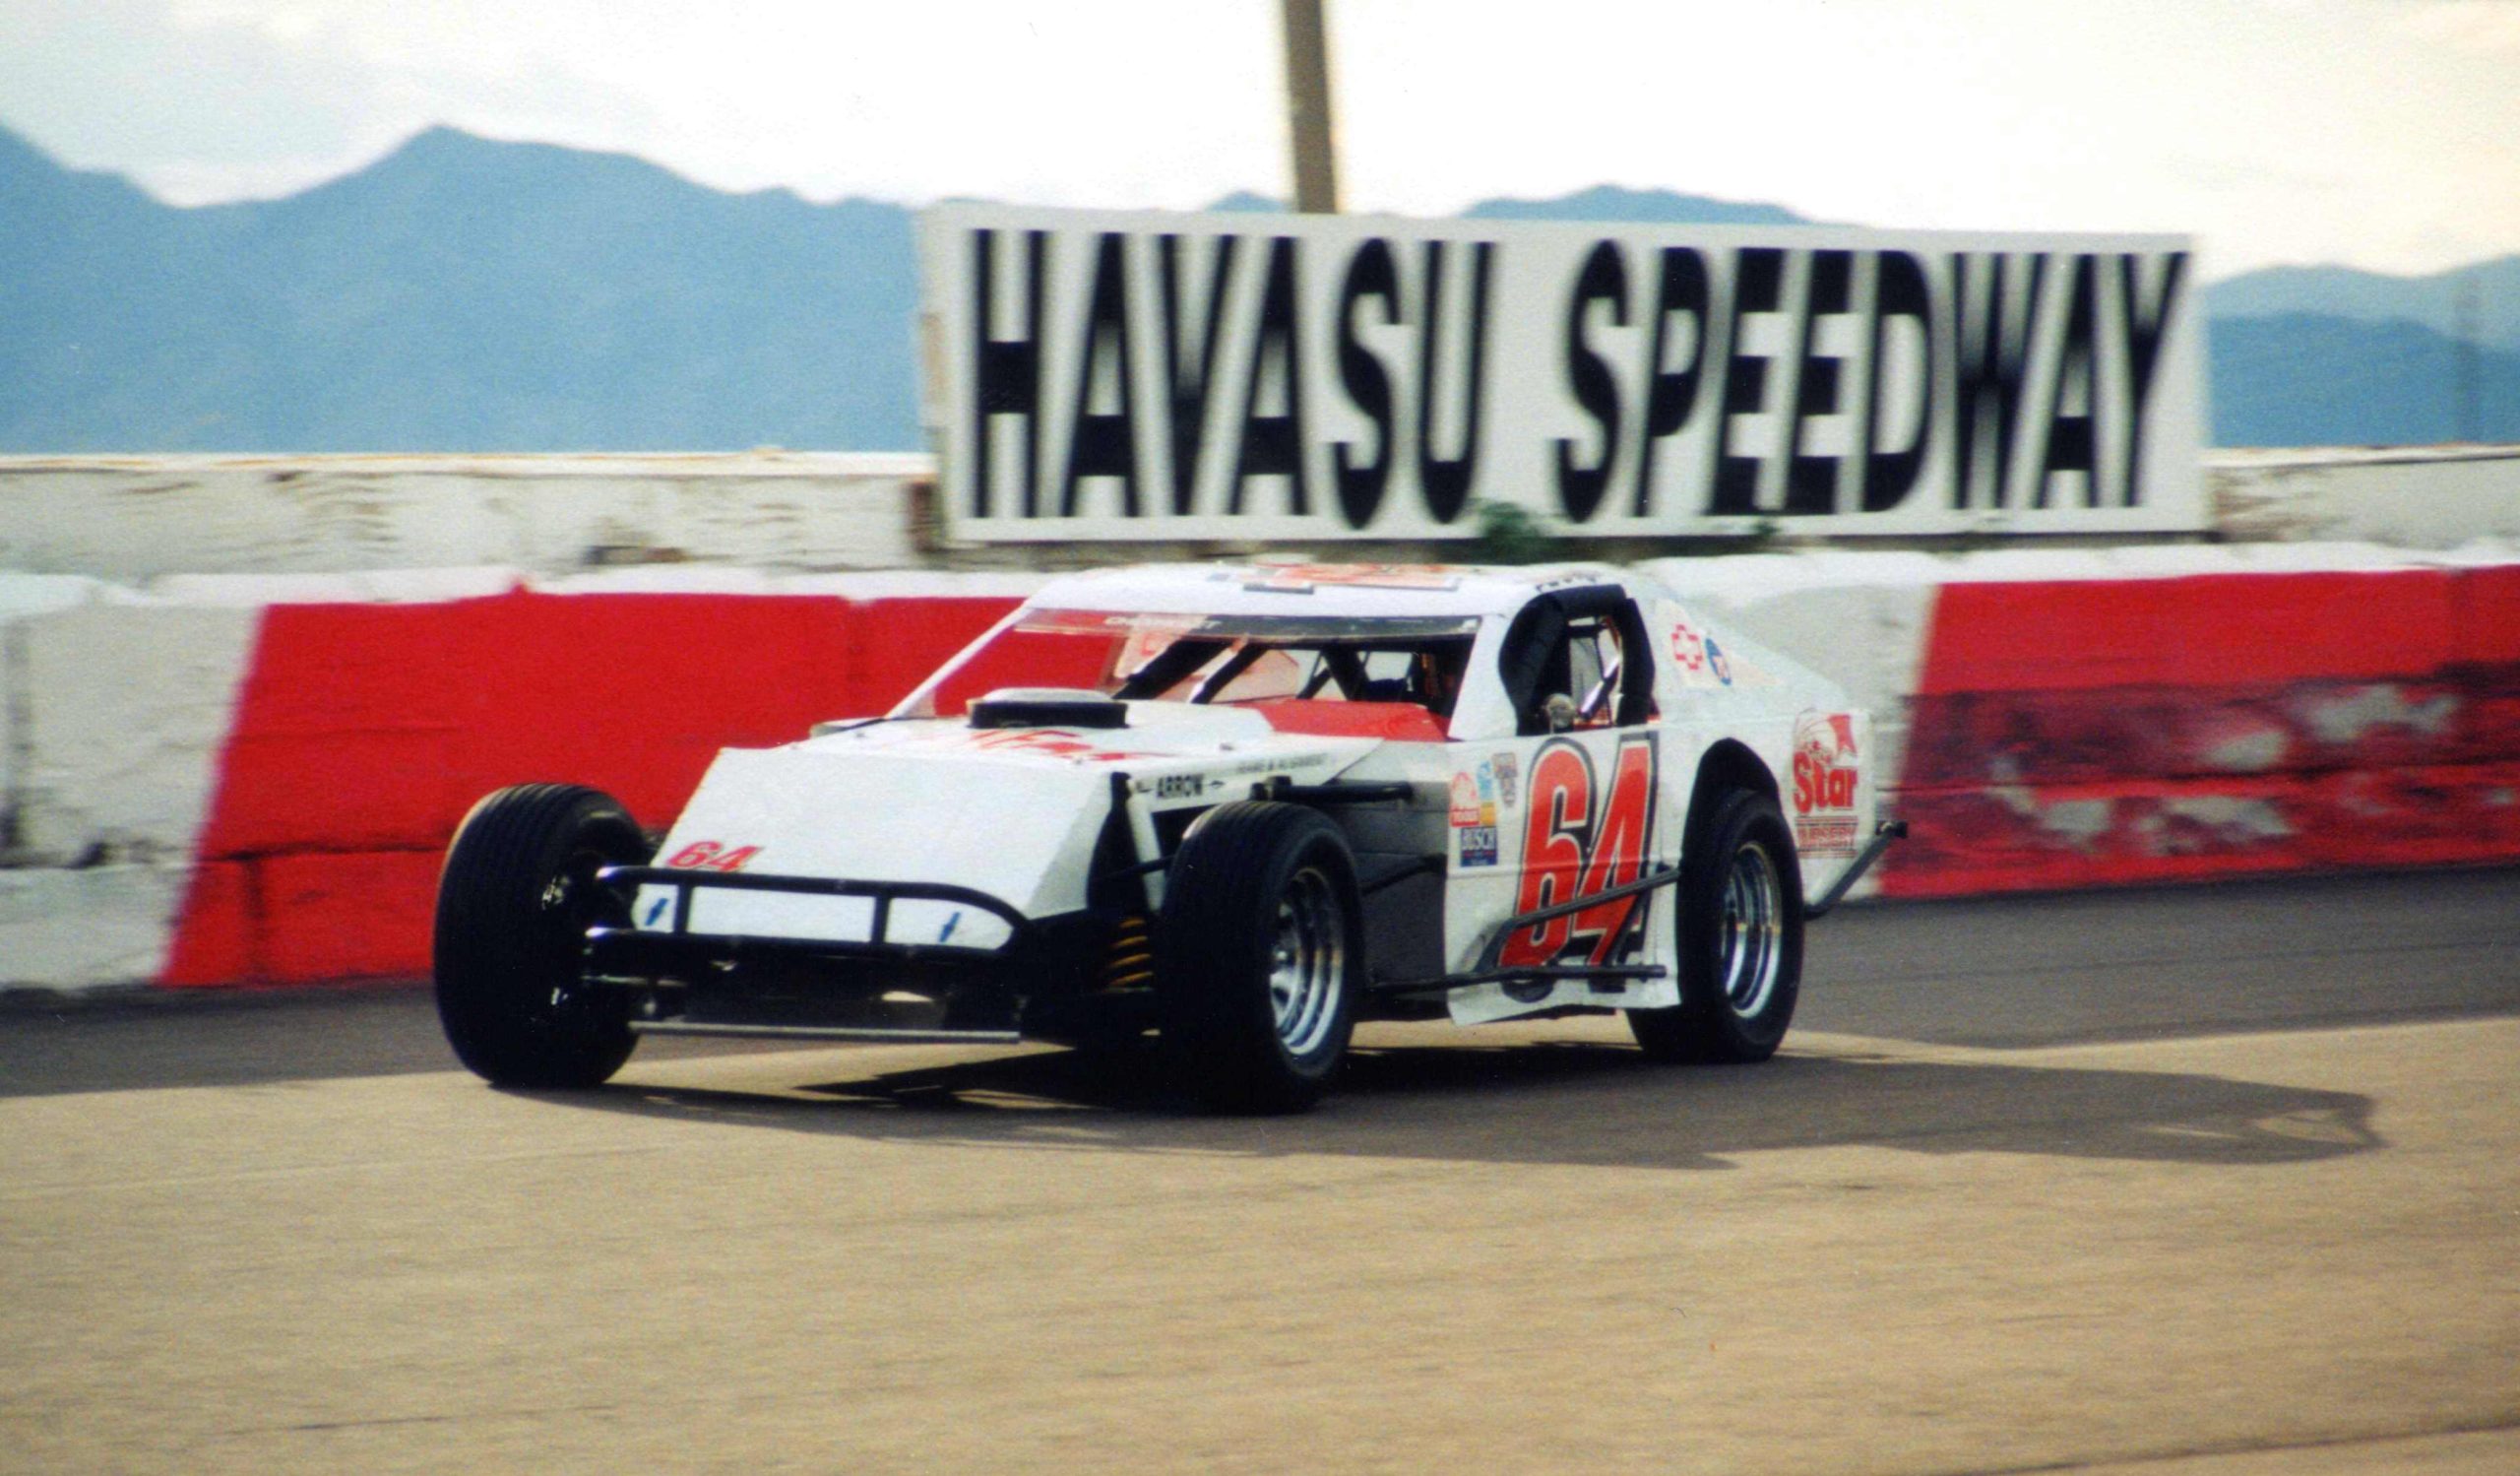 Havasu 95 Speedway Kurt Busch